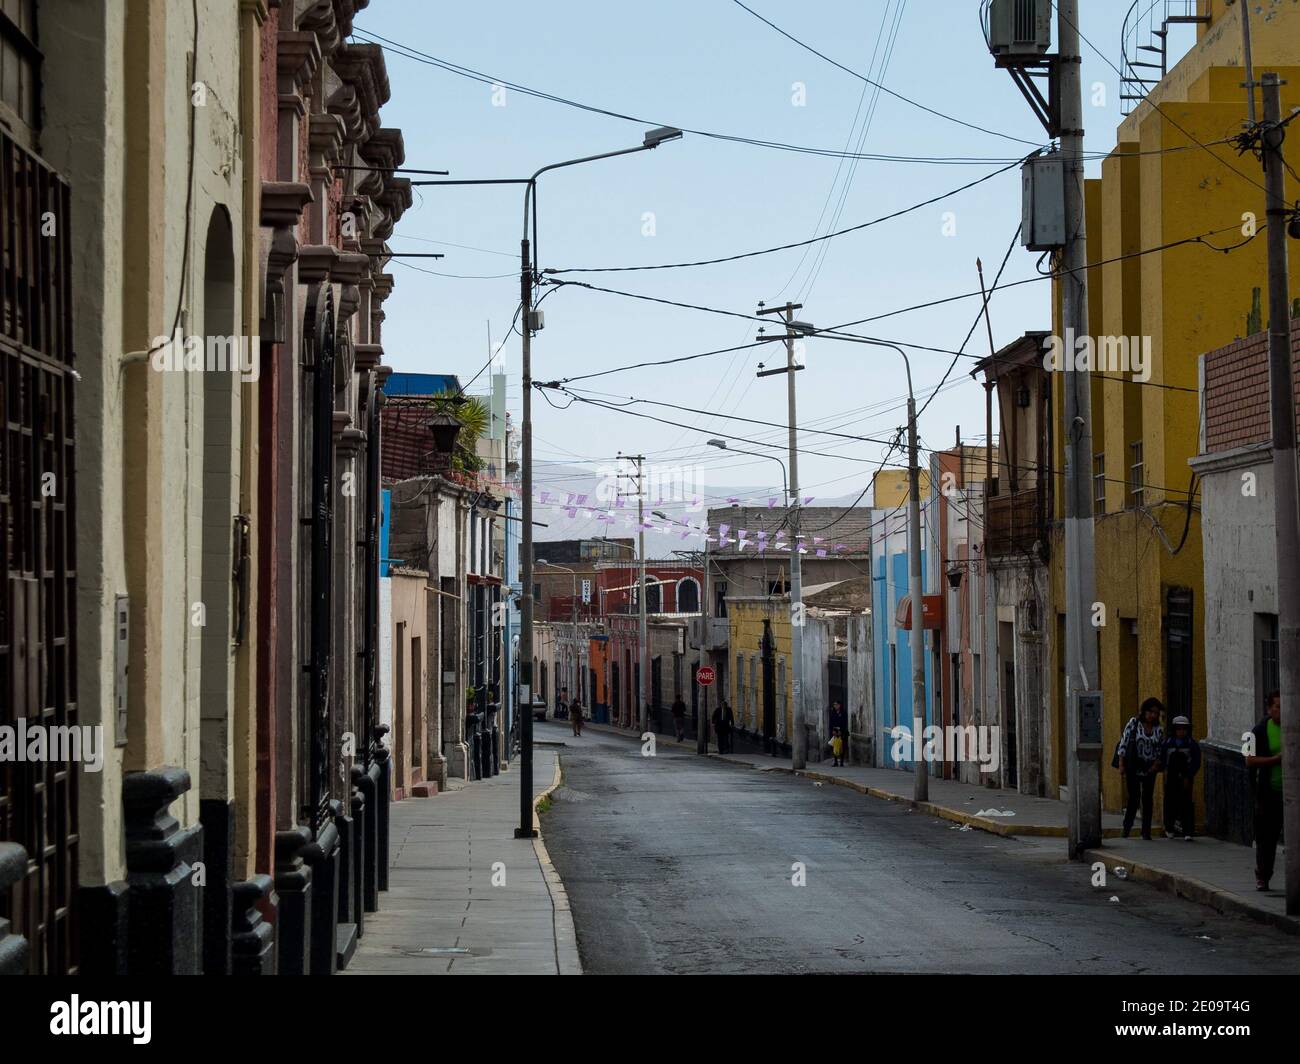 Des bâtiments de style colonial espagnol colorés bordent une rue vide à Arequipa, au Pérou Banque D'Images